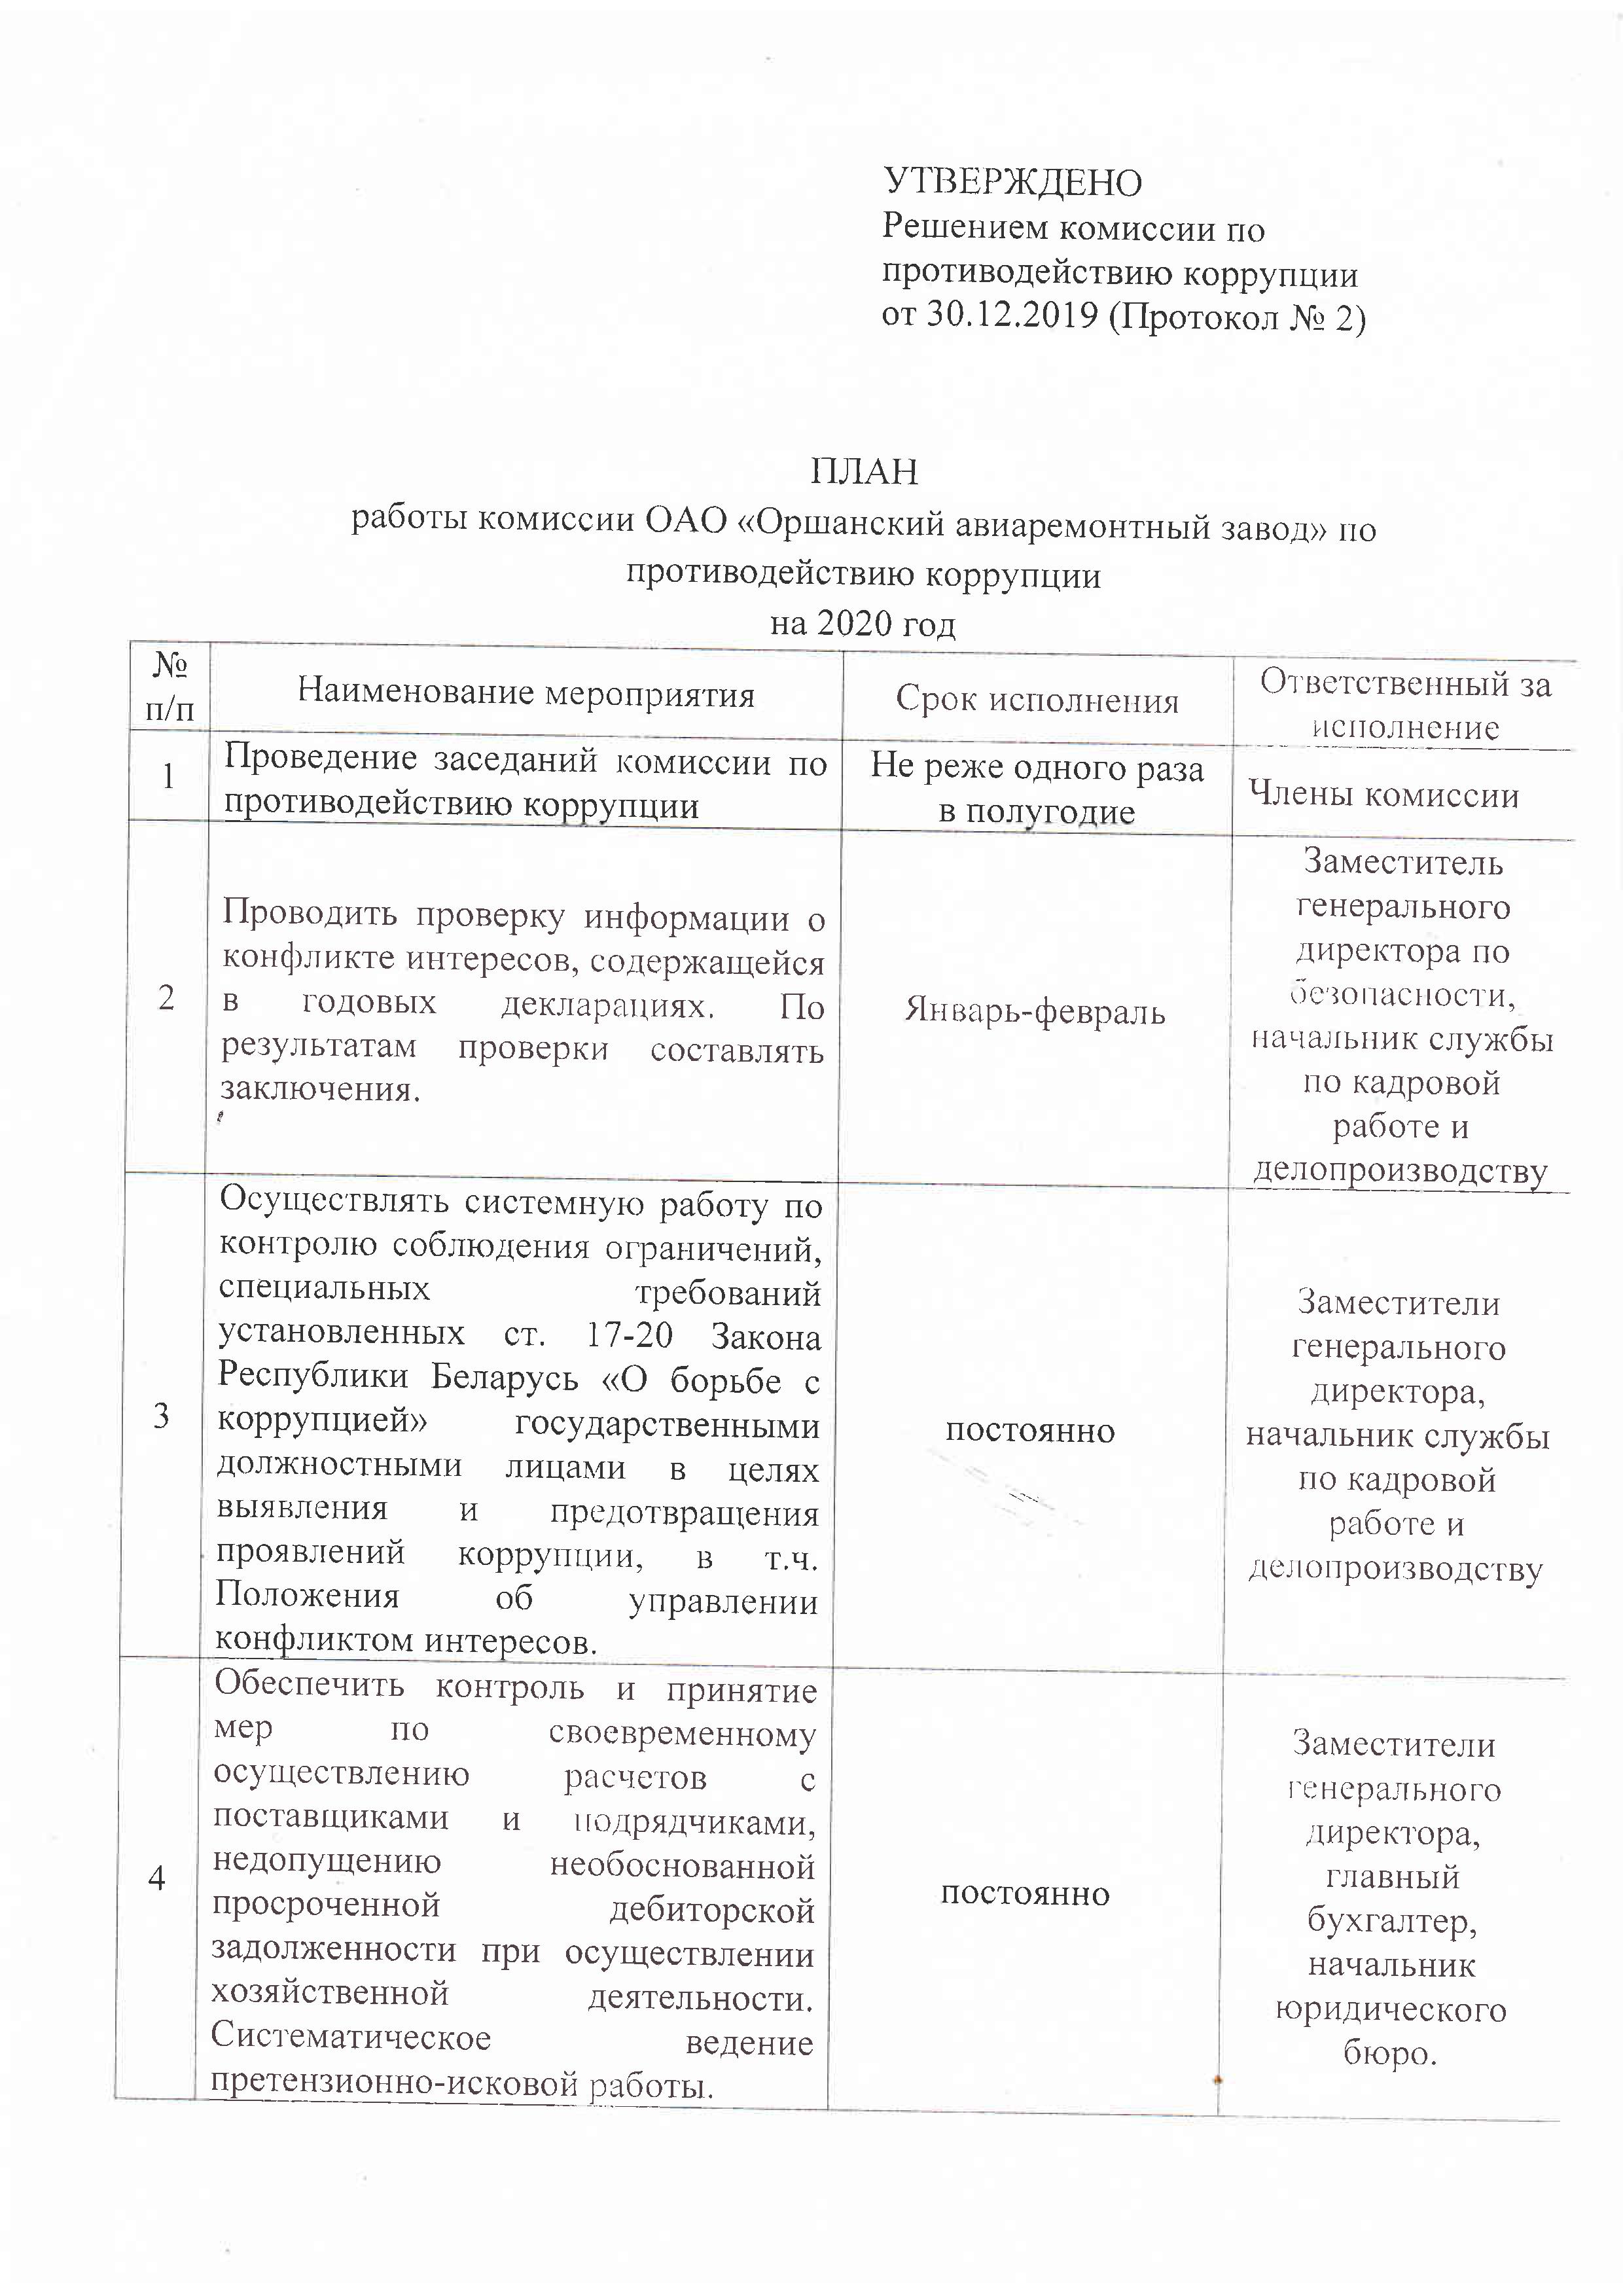 План работы комиссии ОАО "Оршанский авиаремонтный завод" по противодействию коррупции на 2020 год. 1 стр.